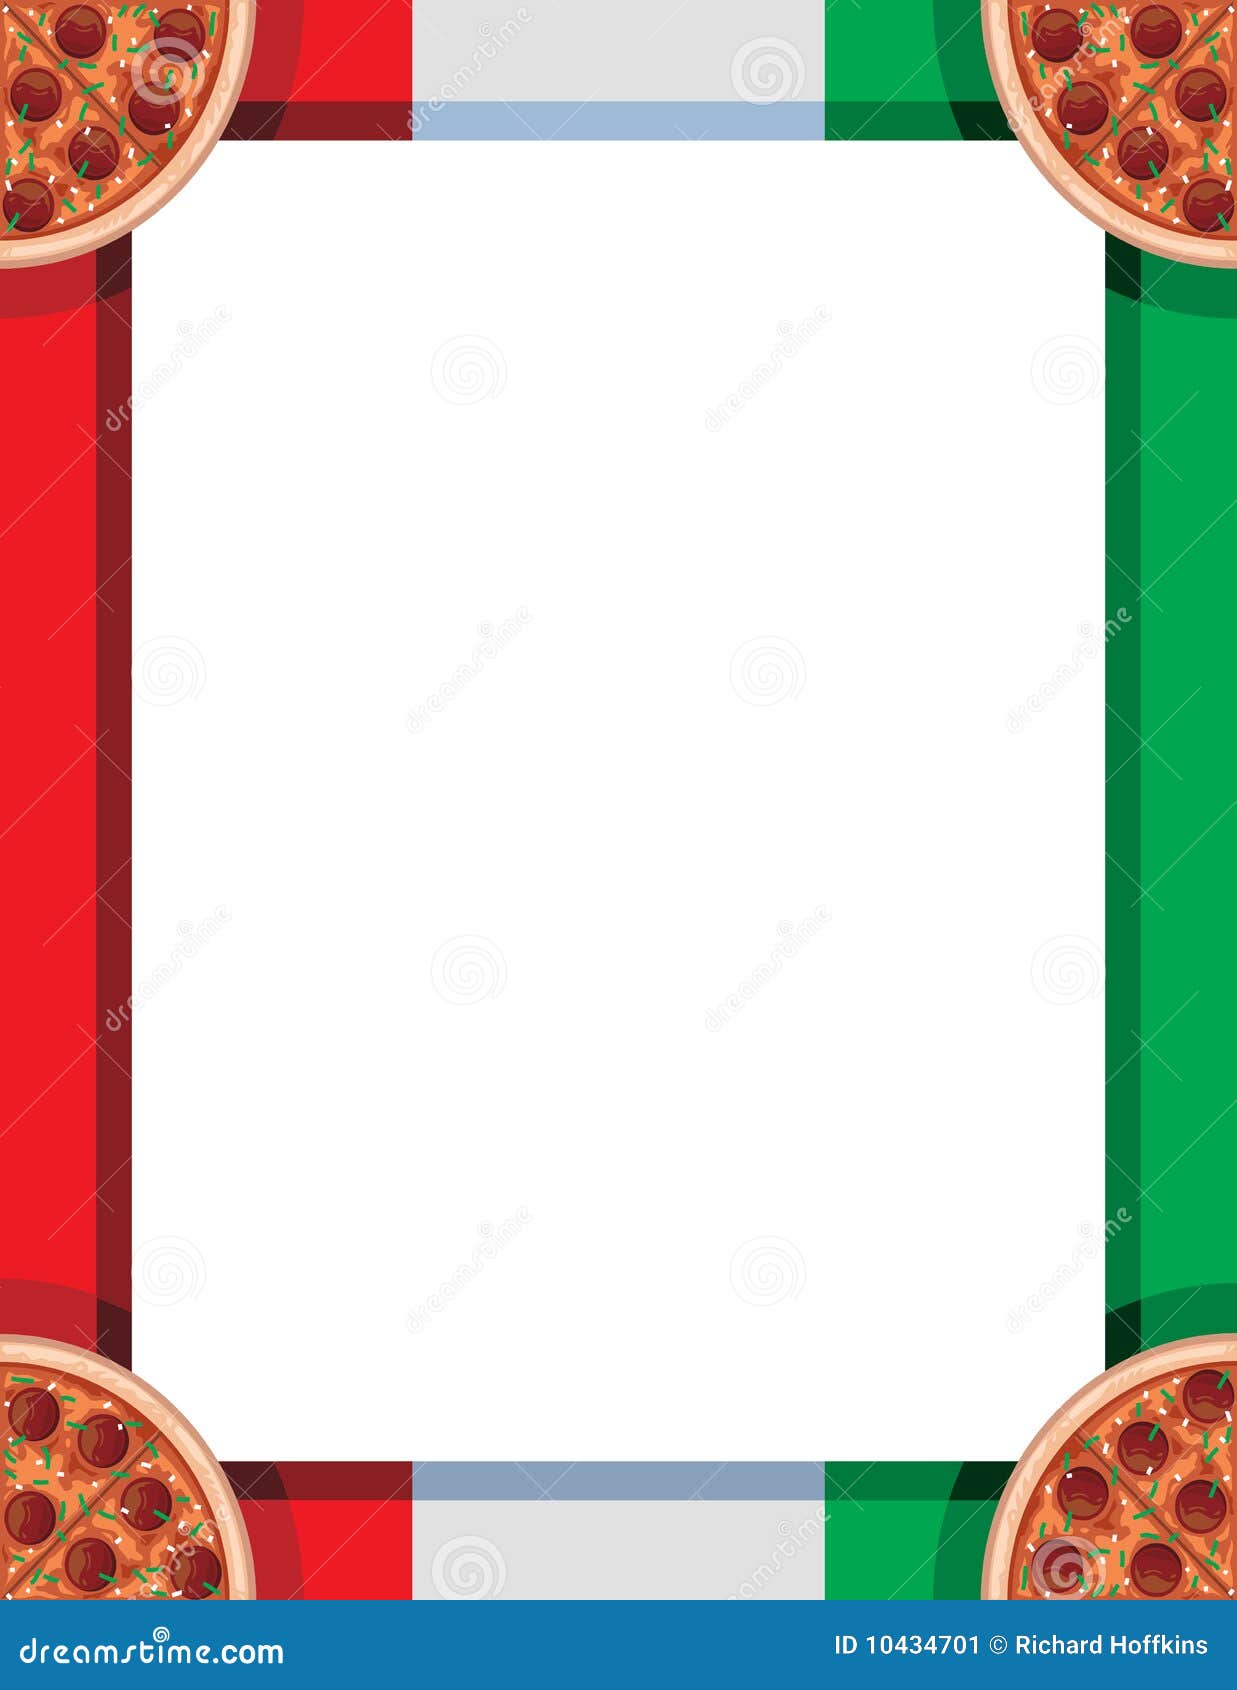 pizza clip art border - photo #9